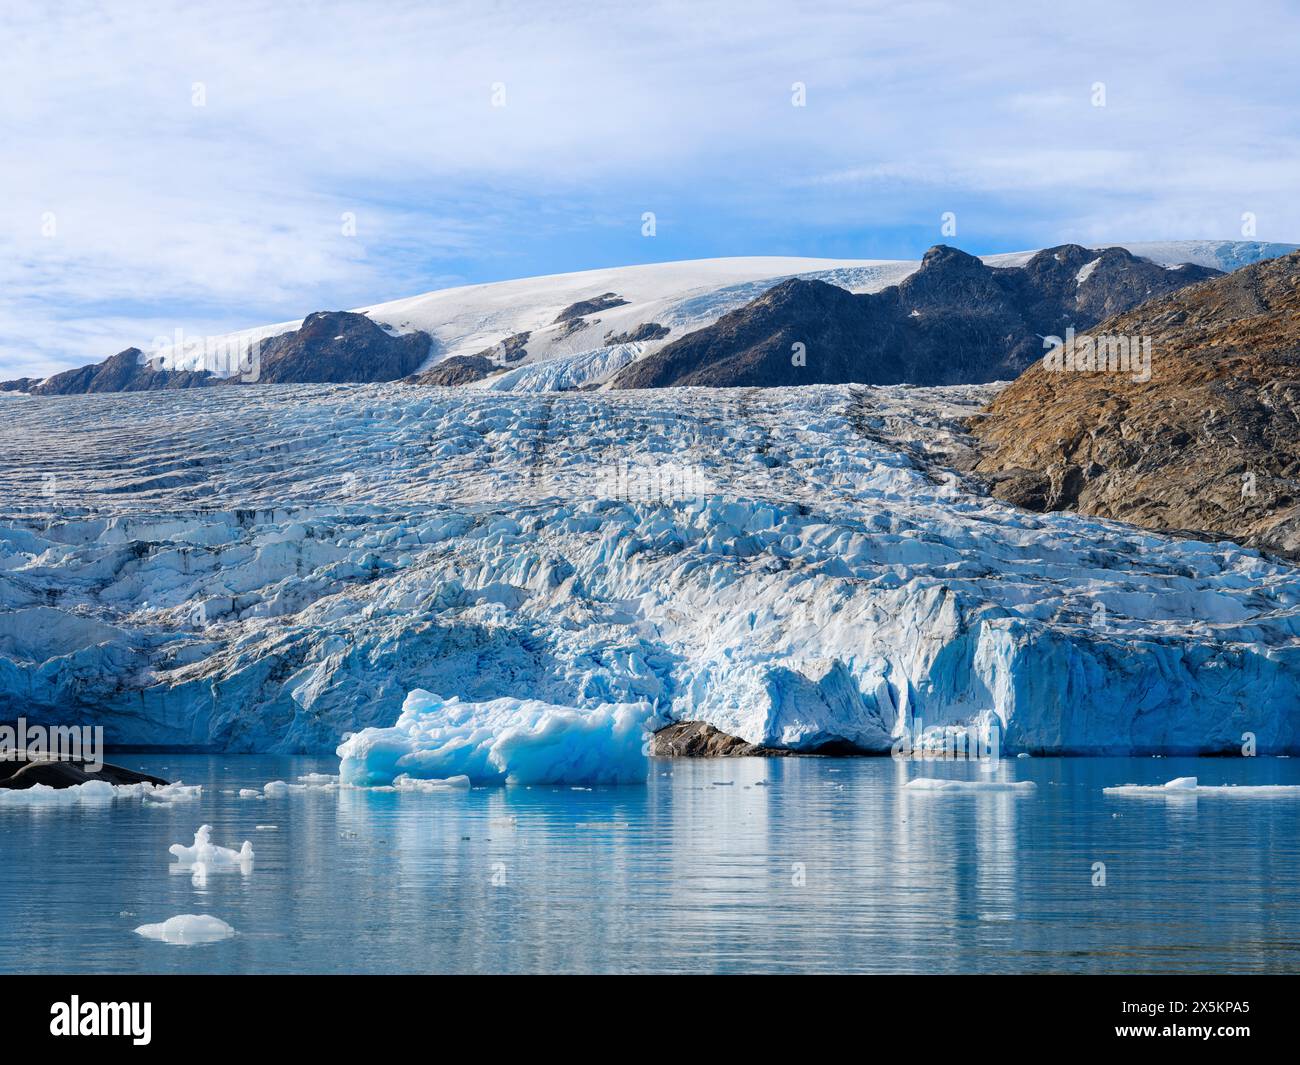 Ghiacciaio di Hahn. Paesaggio nel fiordo di Johan Petersen, un ramo del Sermilik Icefjord, regione di Ammassalik, Groenlandia, territorio danese. Foto Stock